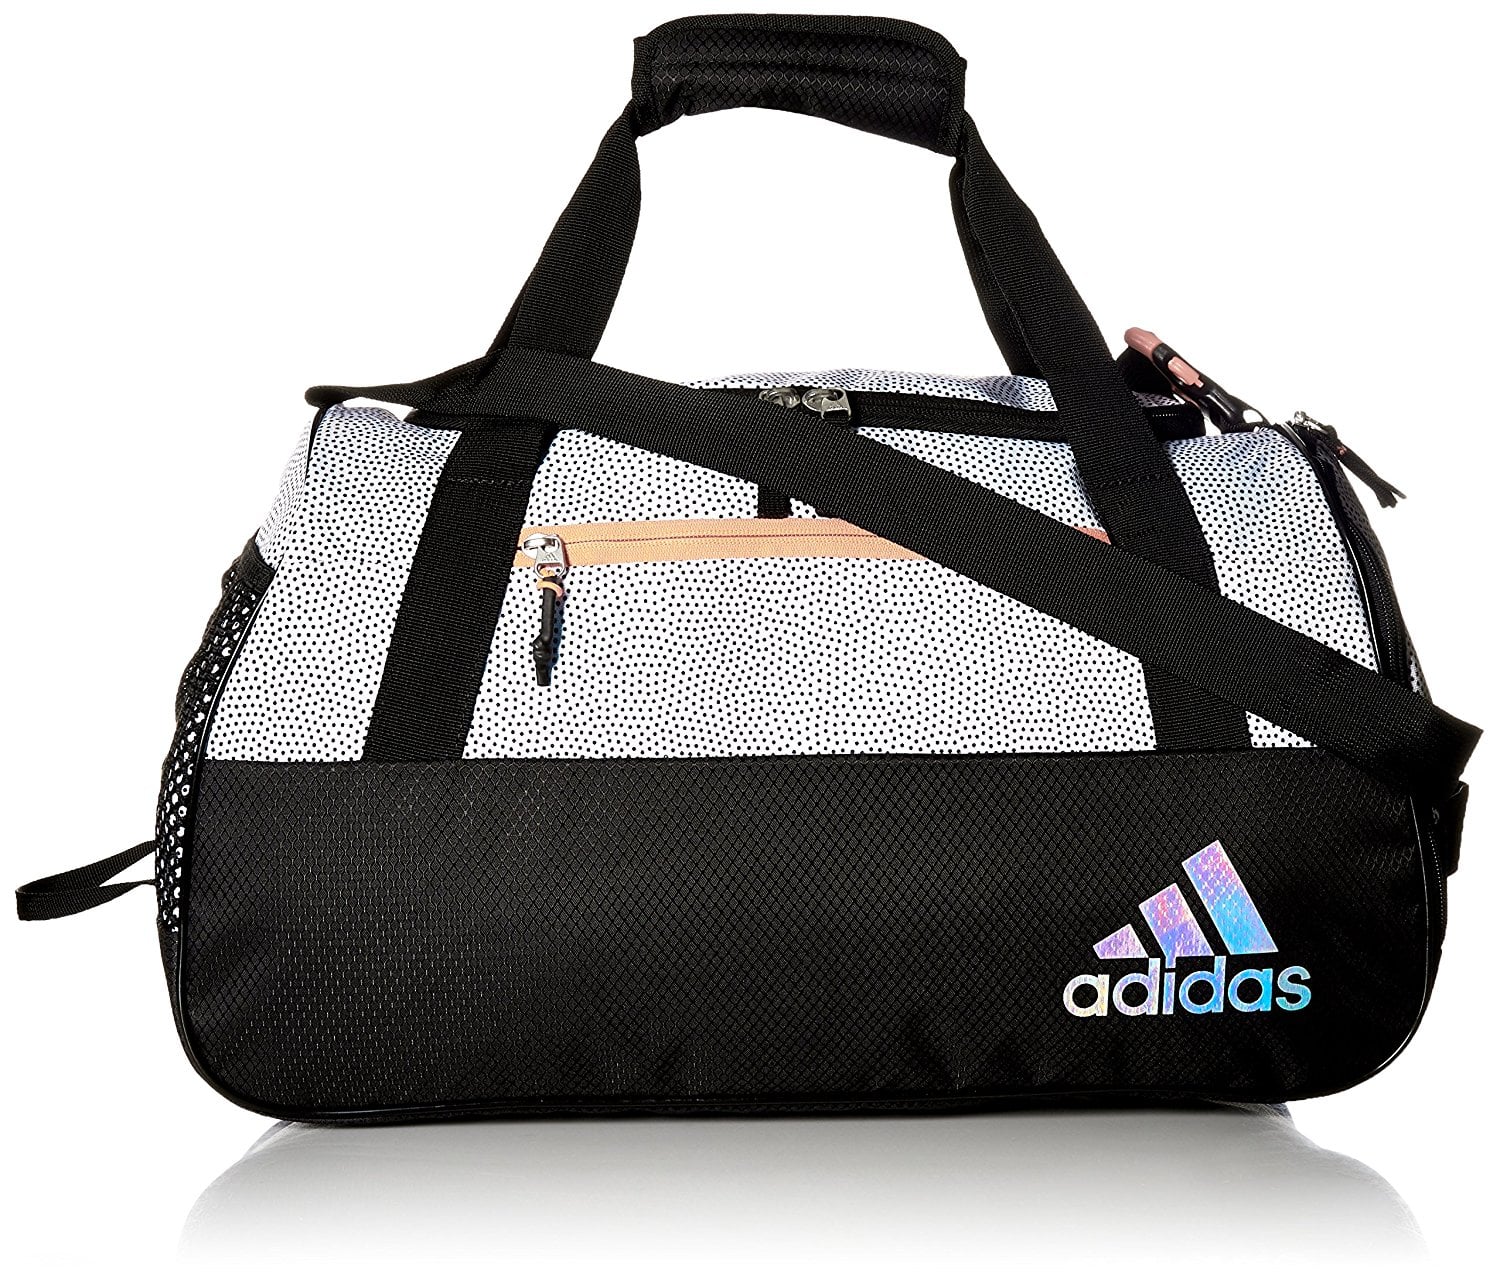 adidas squad 3 duffel bag